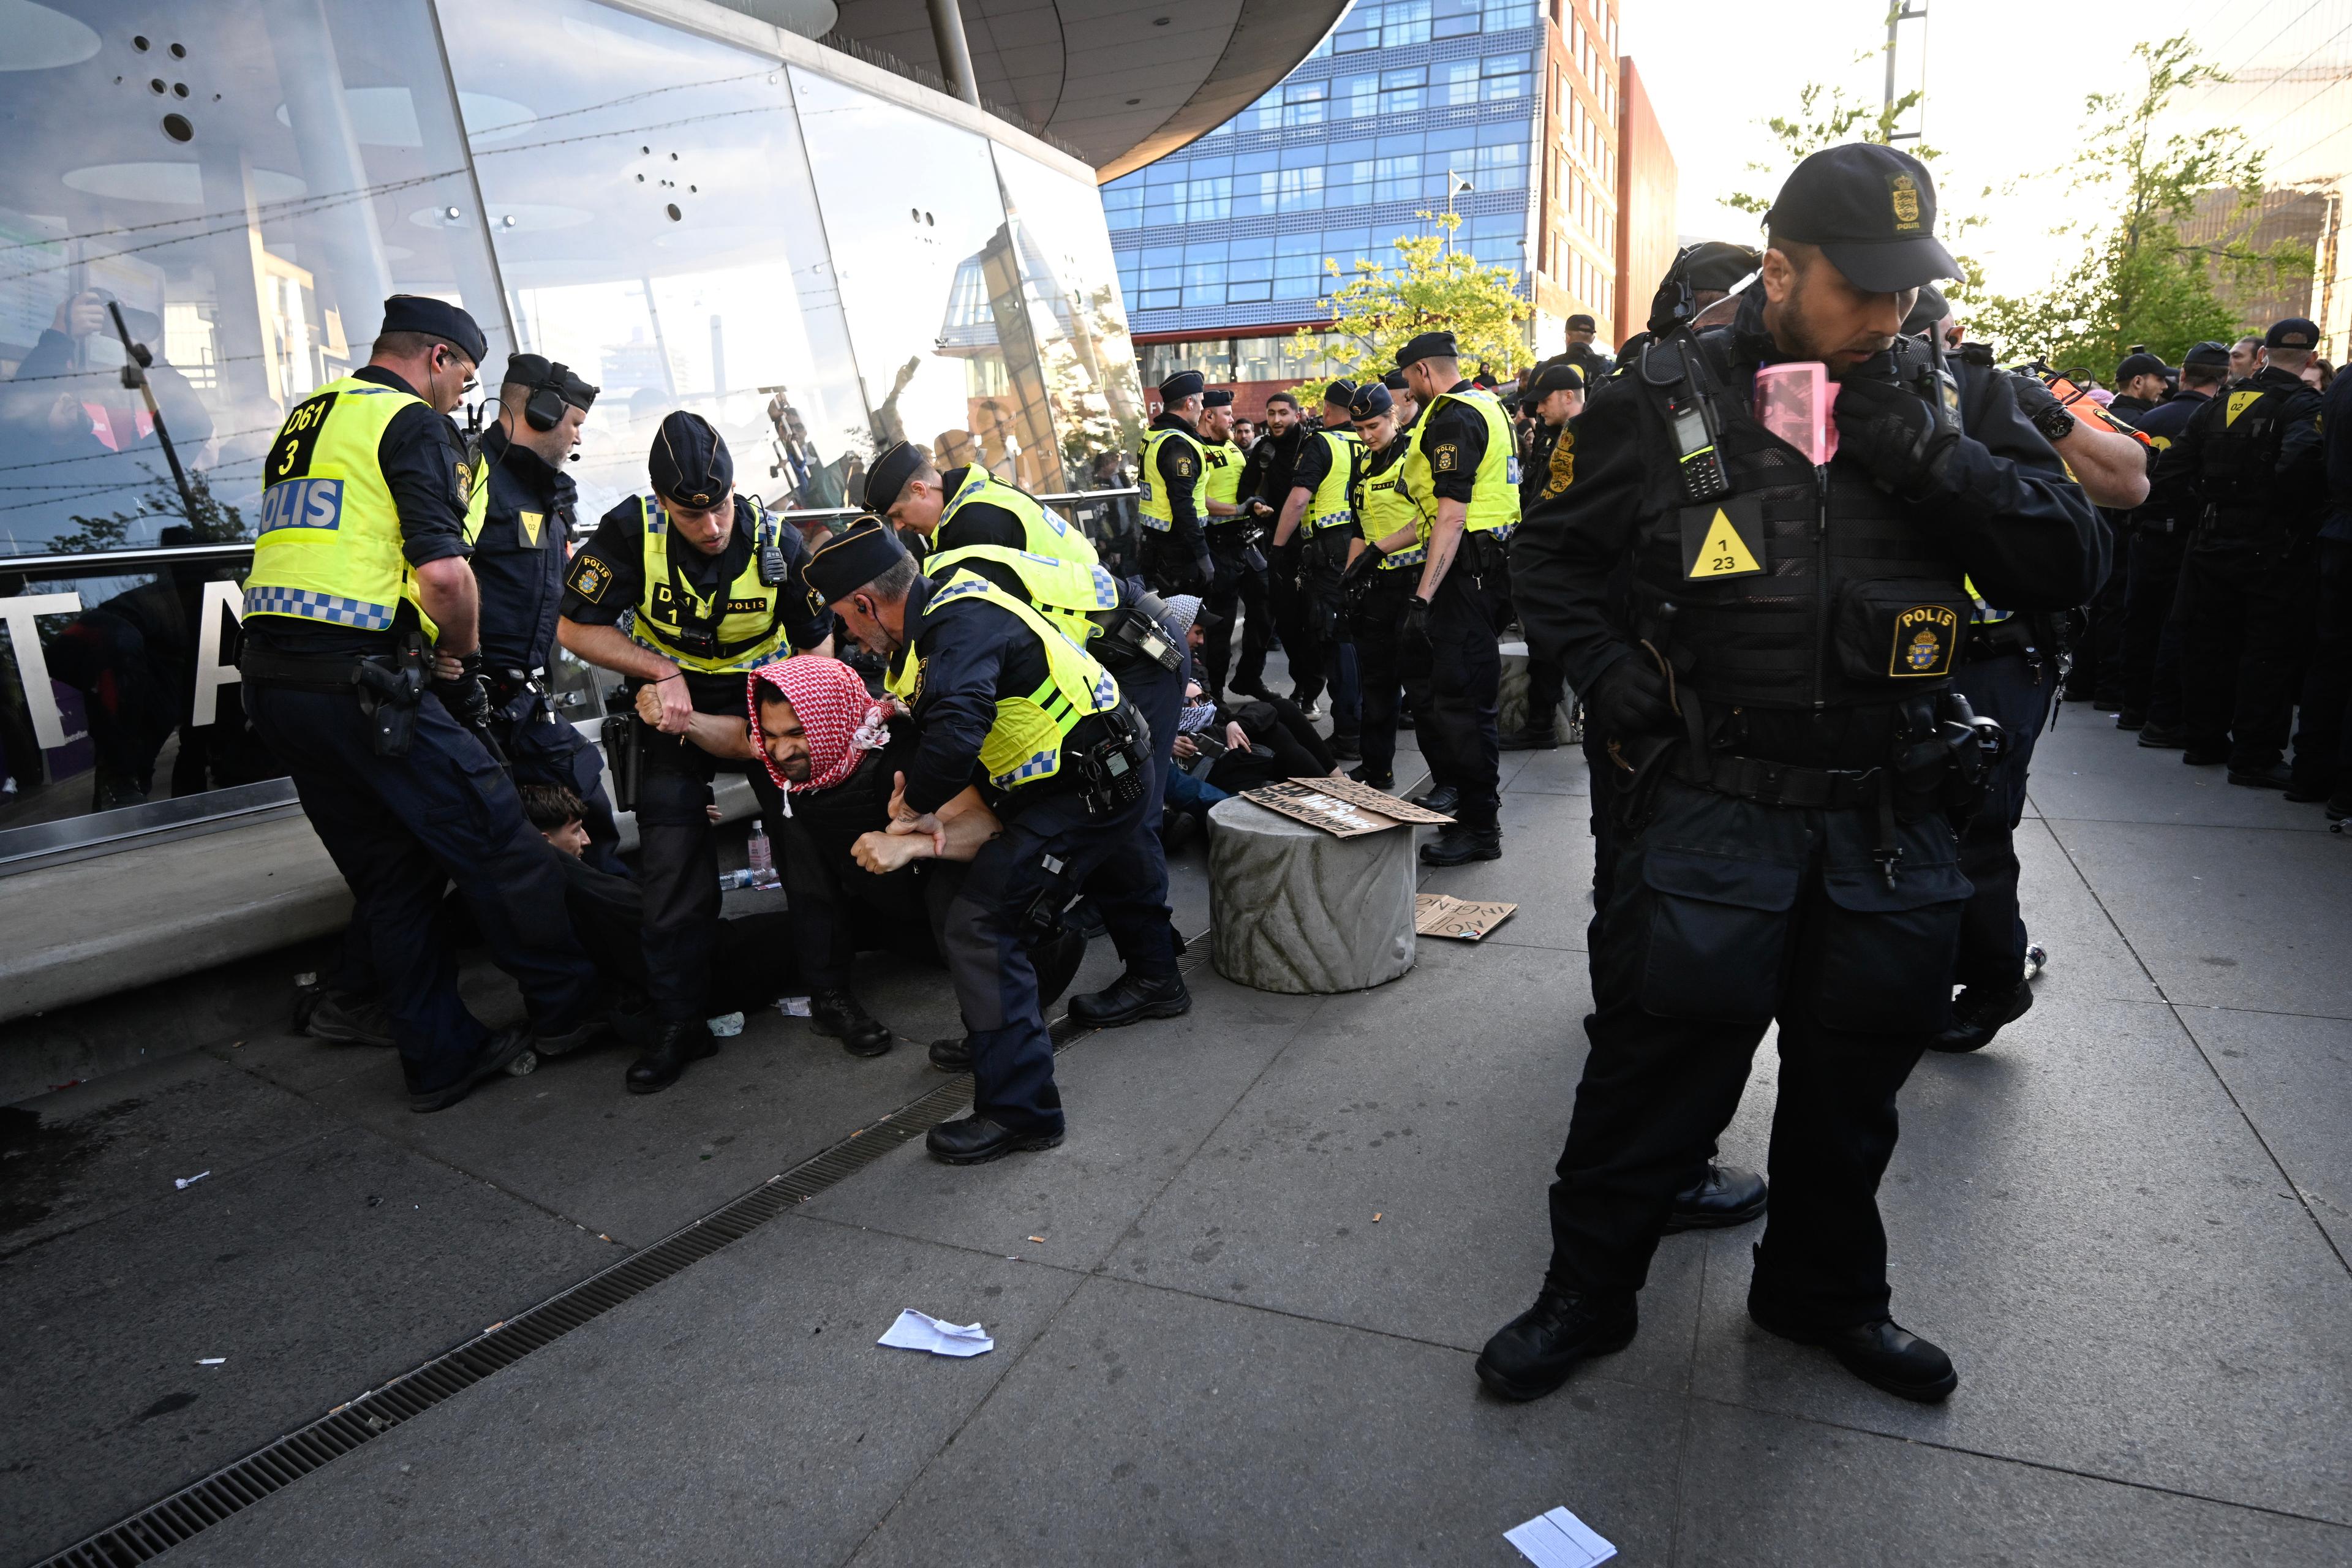 Demonstranter fick tas omhand av polis utanför Malmö arena i samband med att publiken släpptes in på arenan inför Eurovision Song Contest-finalen. Foto: Johan Nilsson/TT